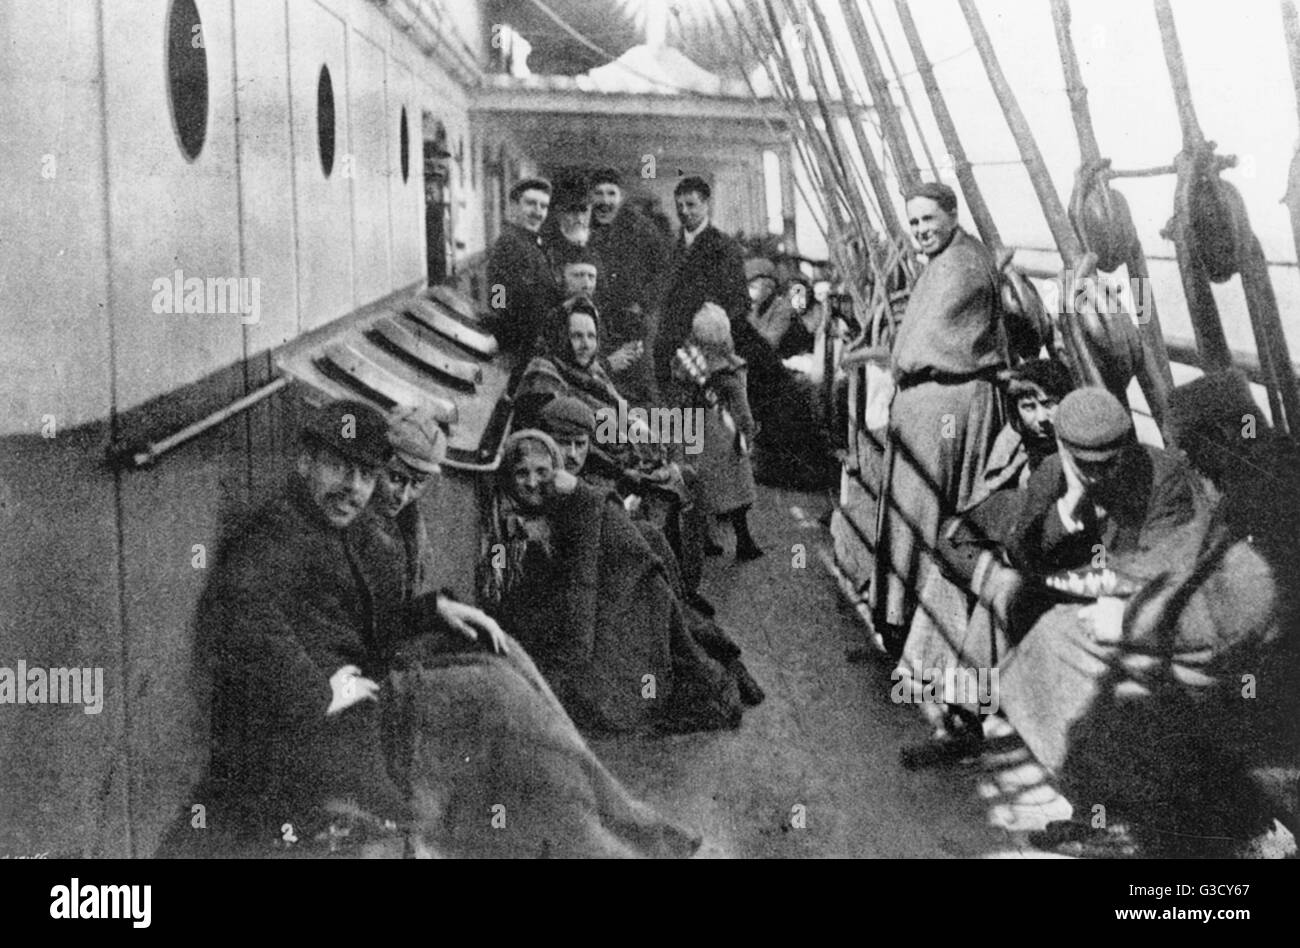 Zwischendeck-Passagiere auf ein Emigrant Schiff von Liverpool nach New York, 1896. Verschiedene Passagiere posieren für ein Foto. Die Reise begann in London mit einem Auswanderer Zug von Euston nach Liverpool.      Datum: 1896 Stockfoto